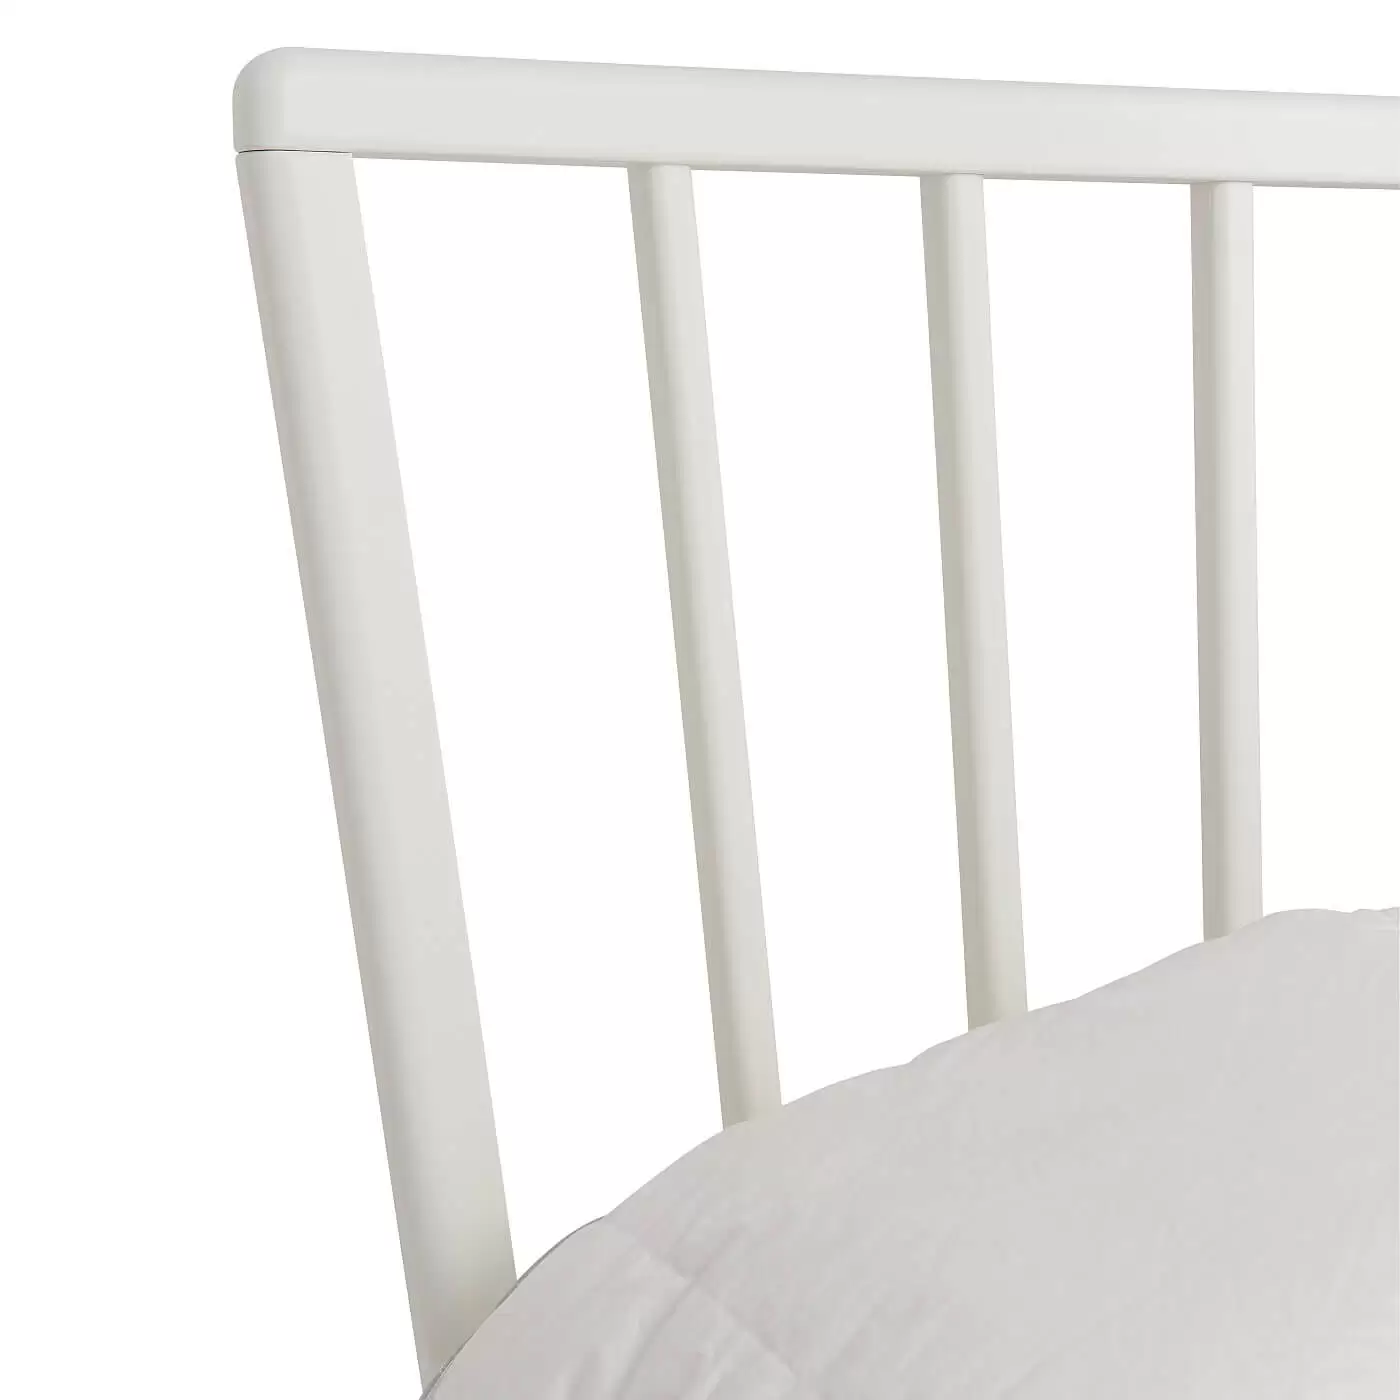 Łóżko skandynawskie białe MELODIA. Fragment ażurowego wysokiego szczytu łóżka do sypialni z drewna brzozy skandynawskiej lakierowanej na biało. Nowoczesny design